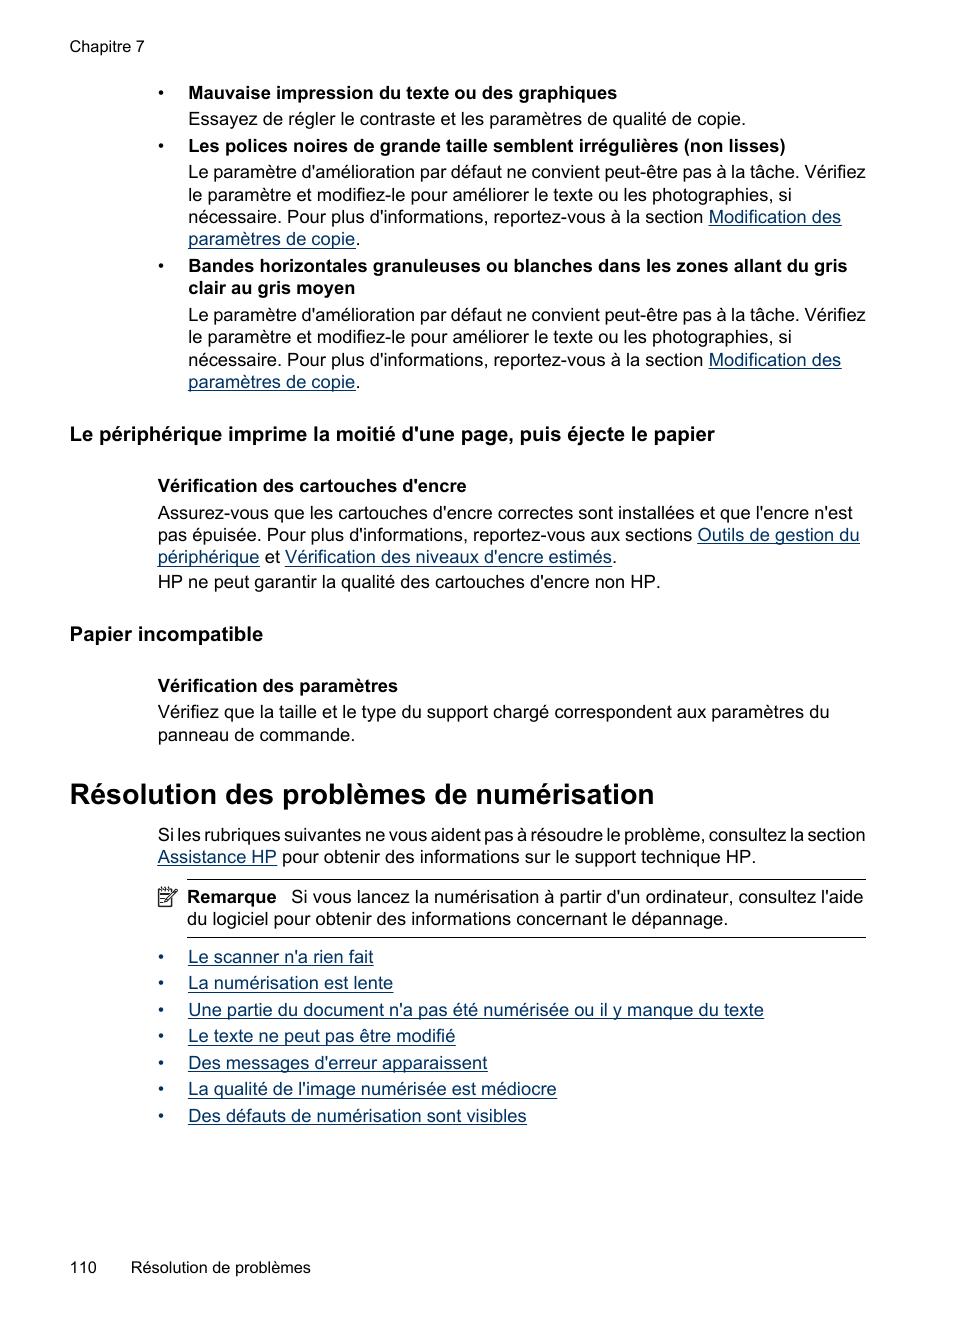 Papier incompatible, Résolution des problèmes de numérisation | HP OFFICEJET 4500 Manuel d'utilisation | Page 114 / 256